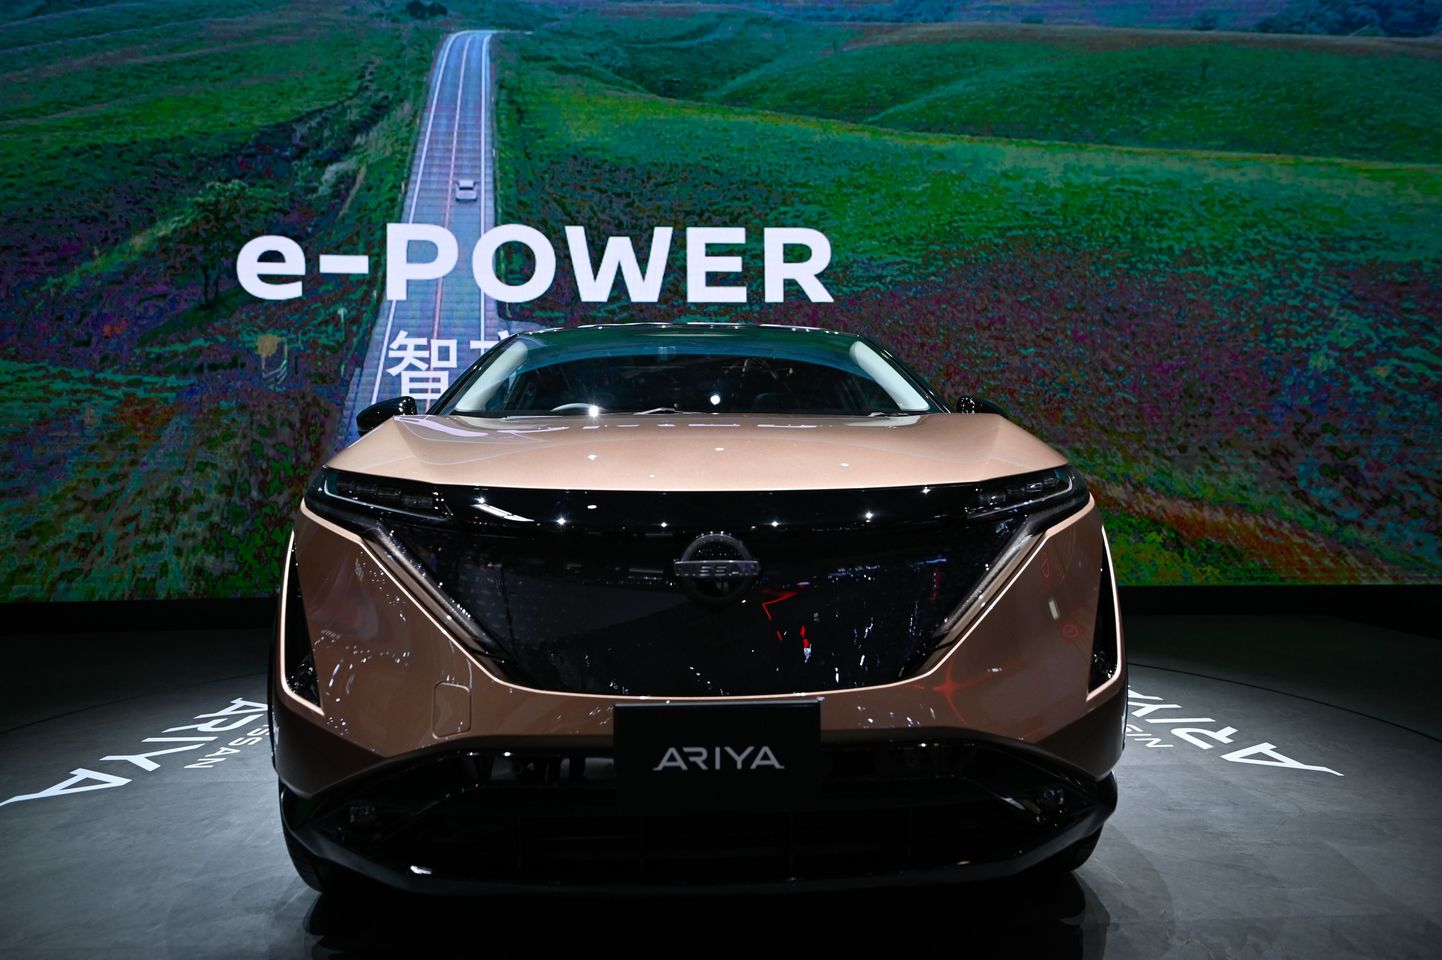 Nissan Ariya Pekingi autonäitusel 27. septembril 2020.